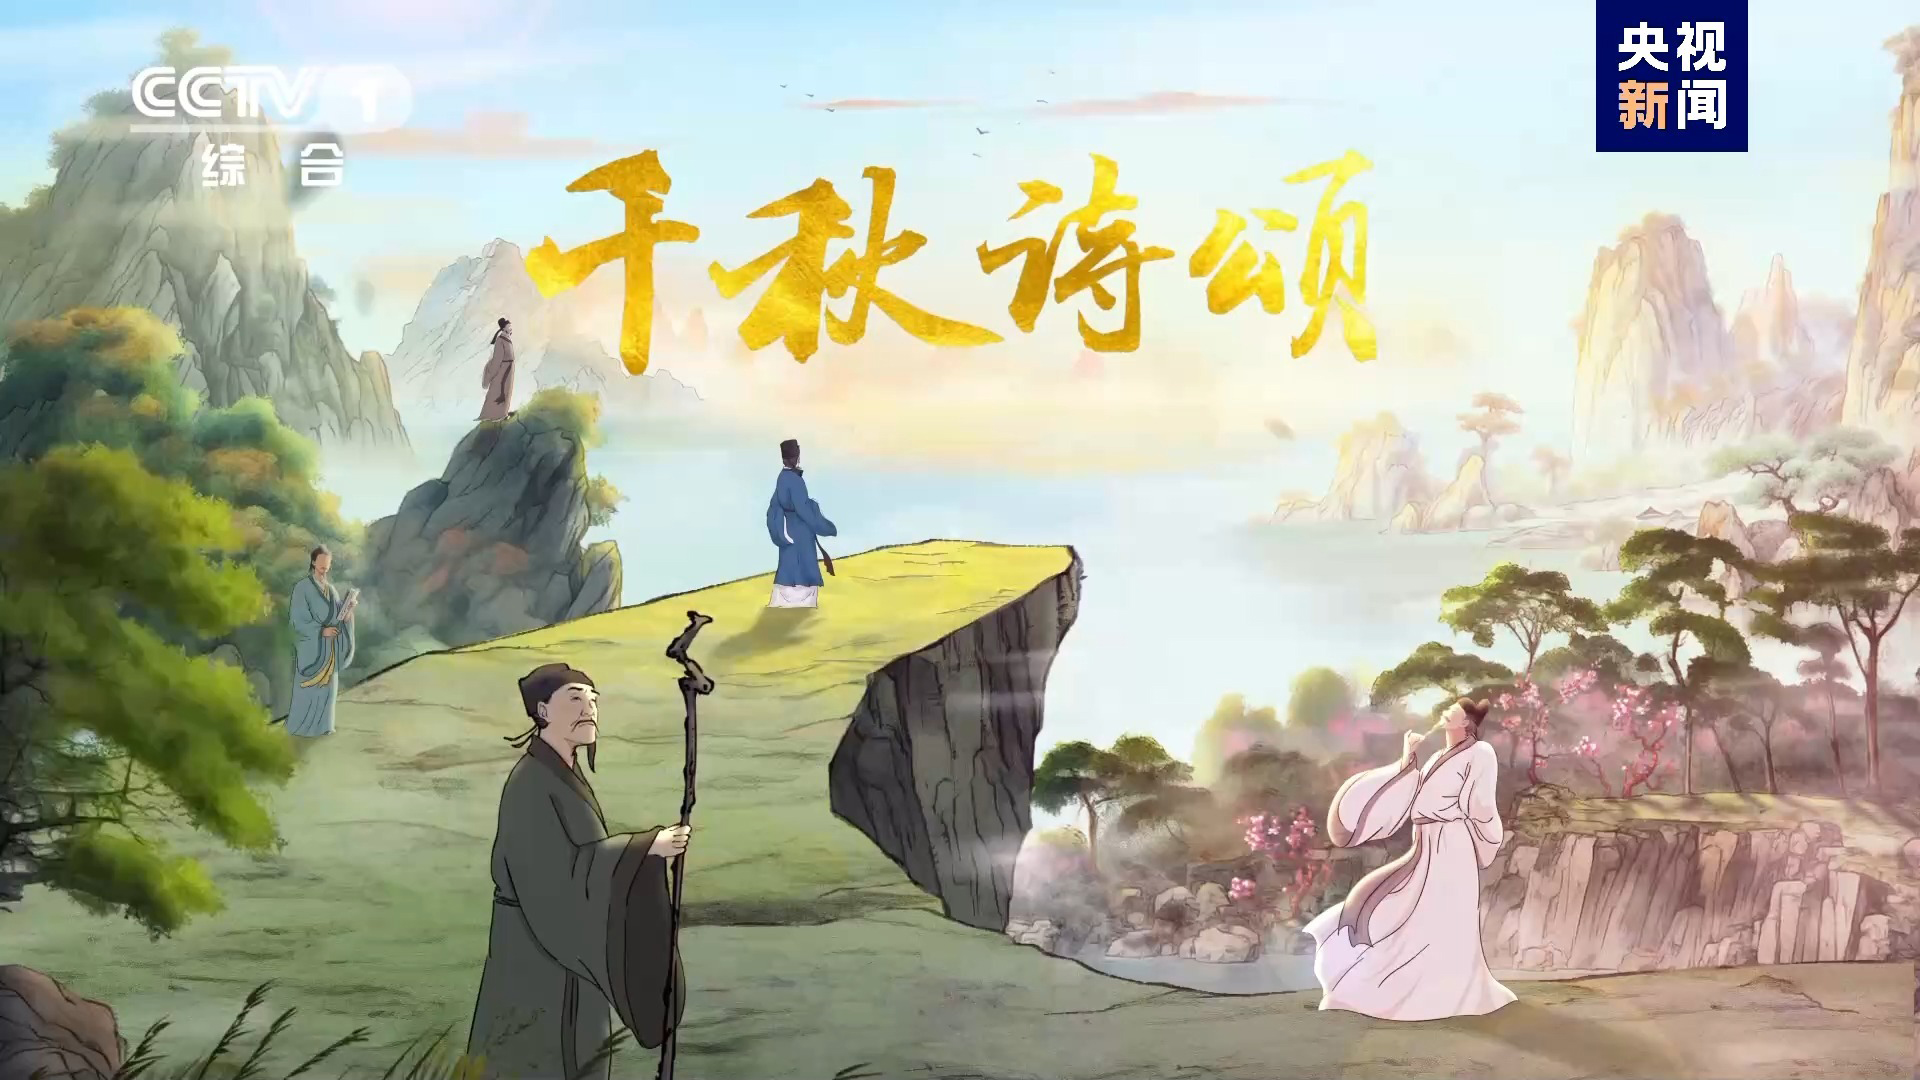 央视发布中国首部文生视频AIGC创作的系列动画片《千秋诗颂》，英文版在海外上星频道播出